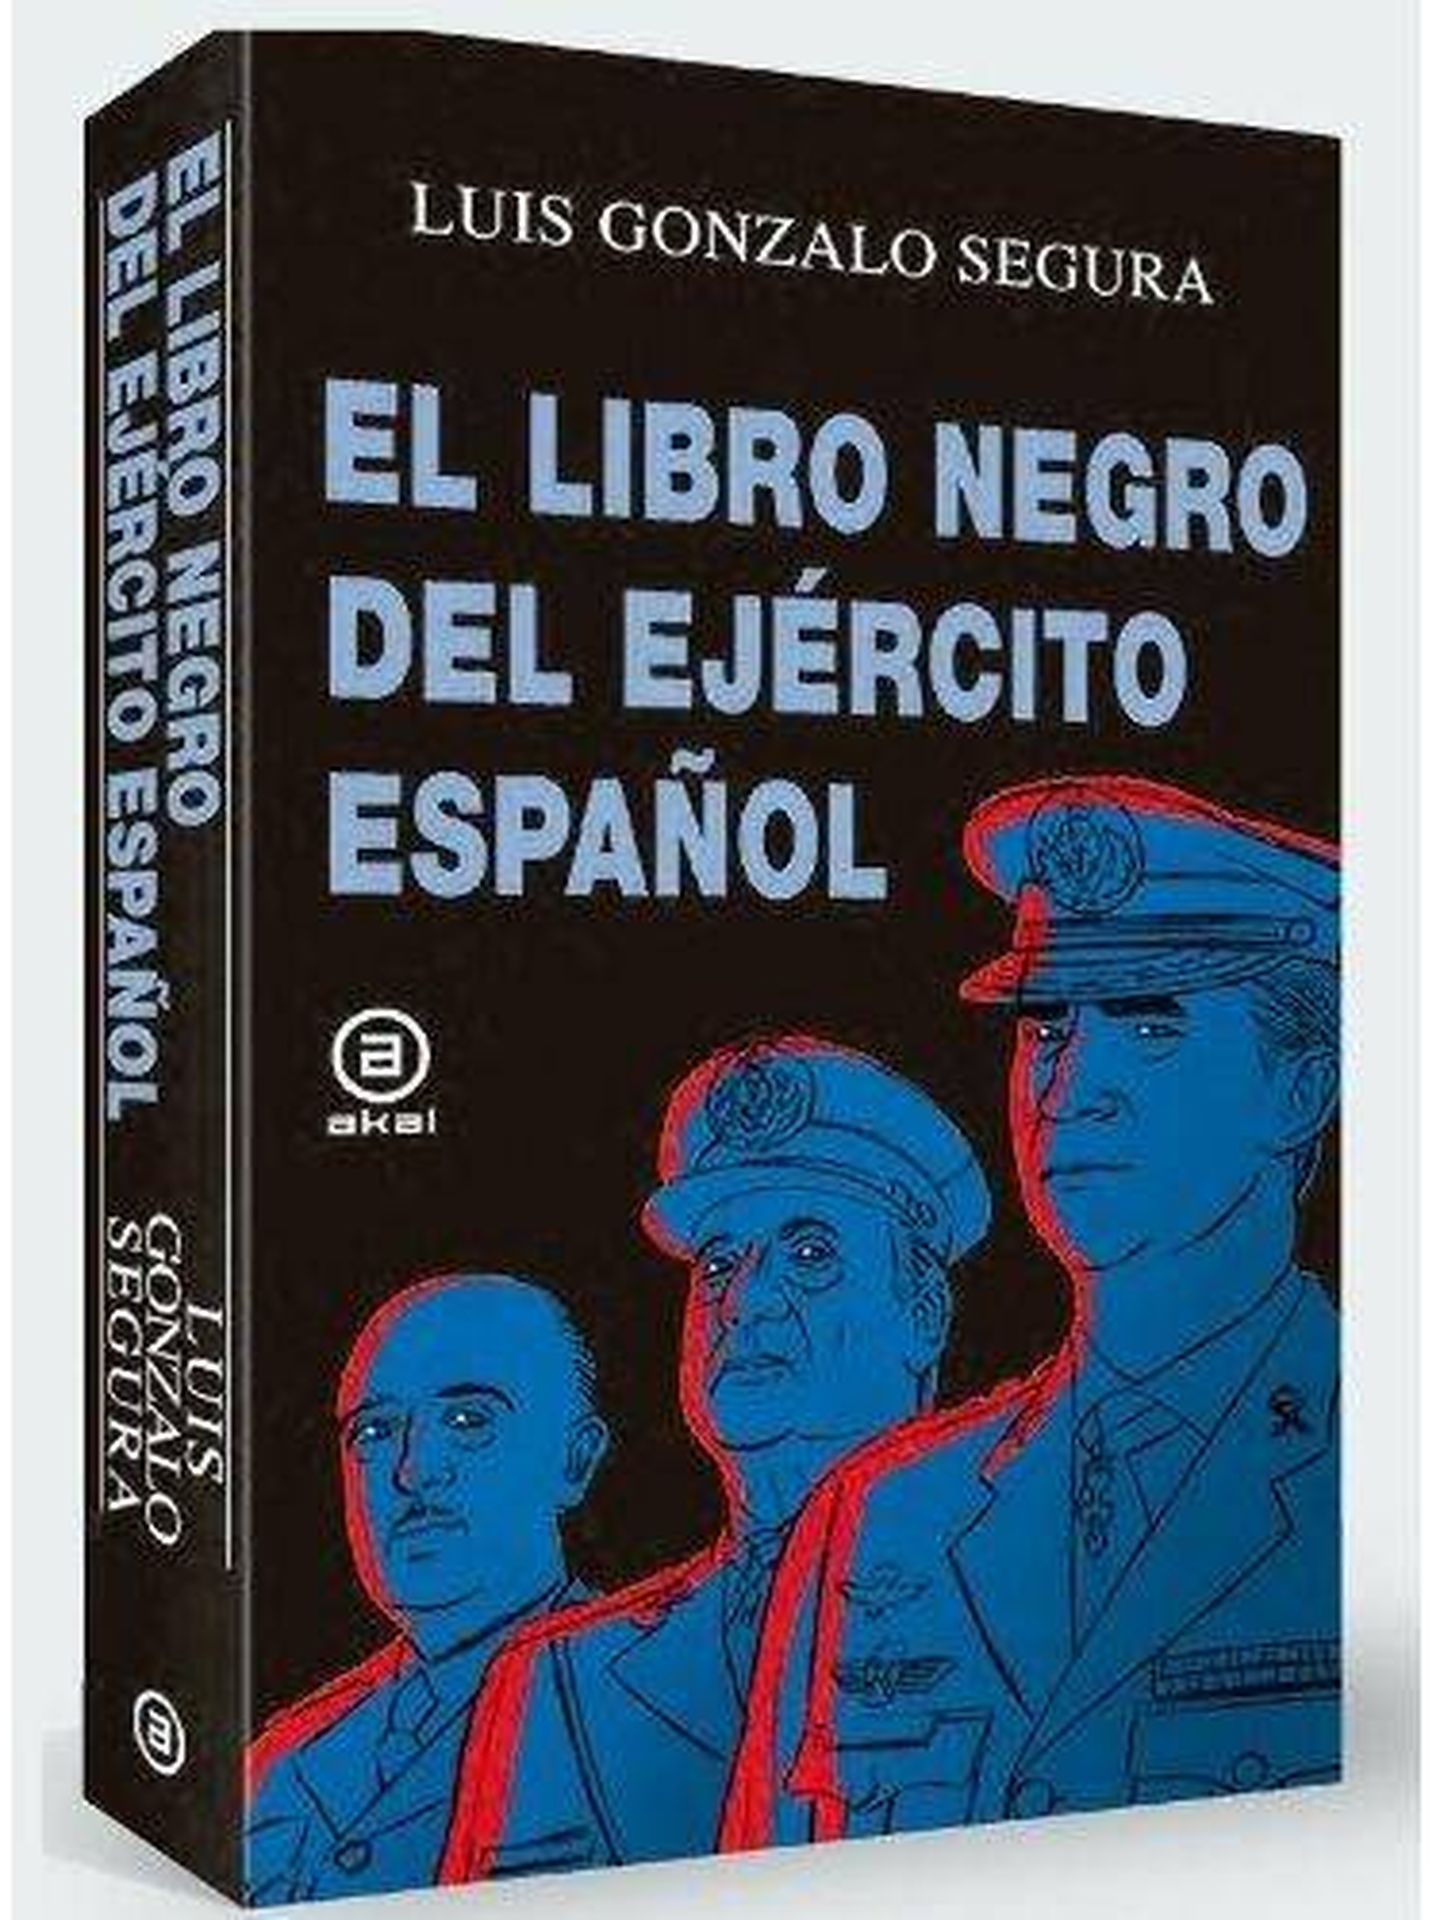 'El libro negro del ejército español' (Akal)